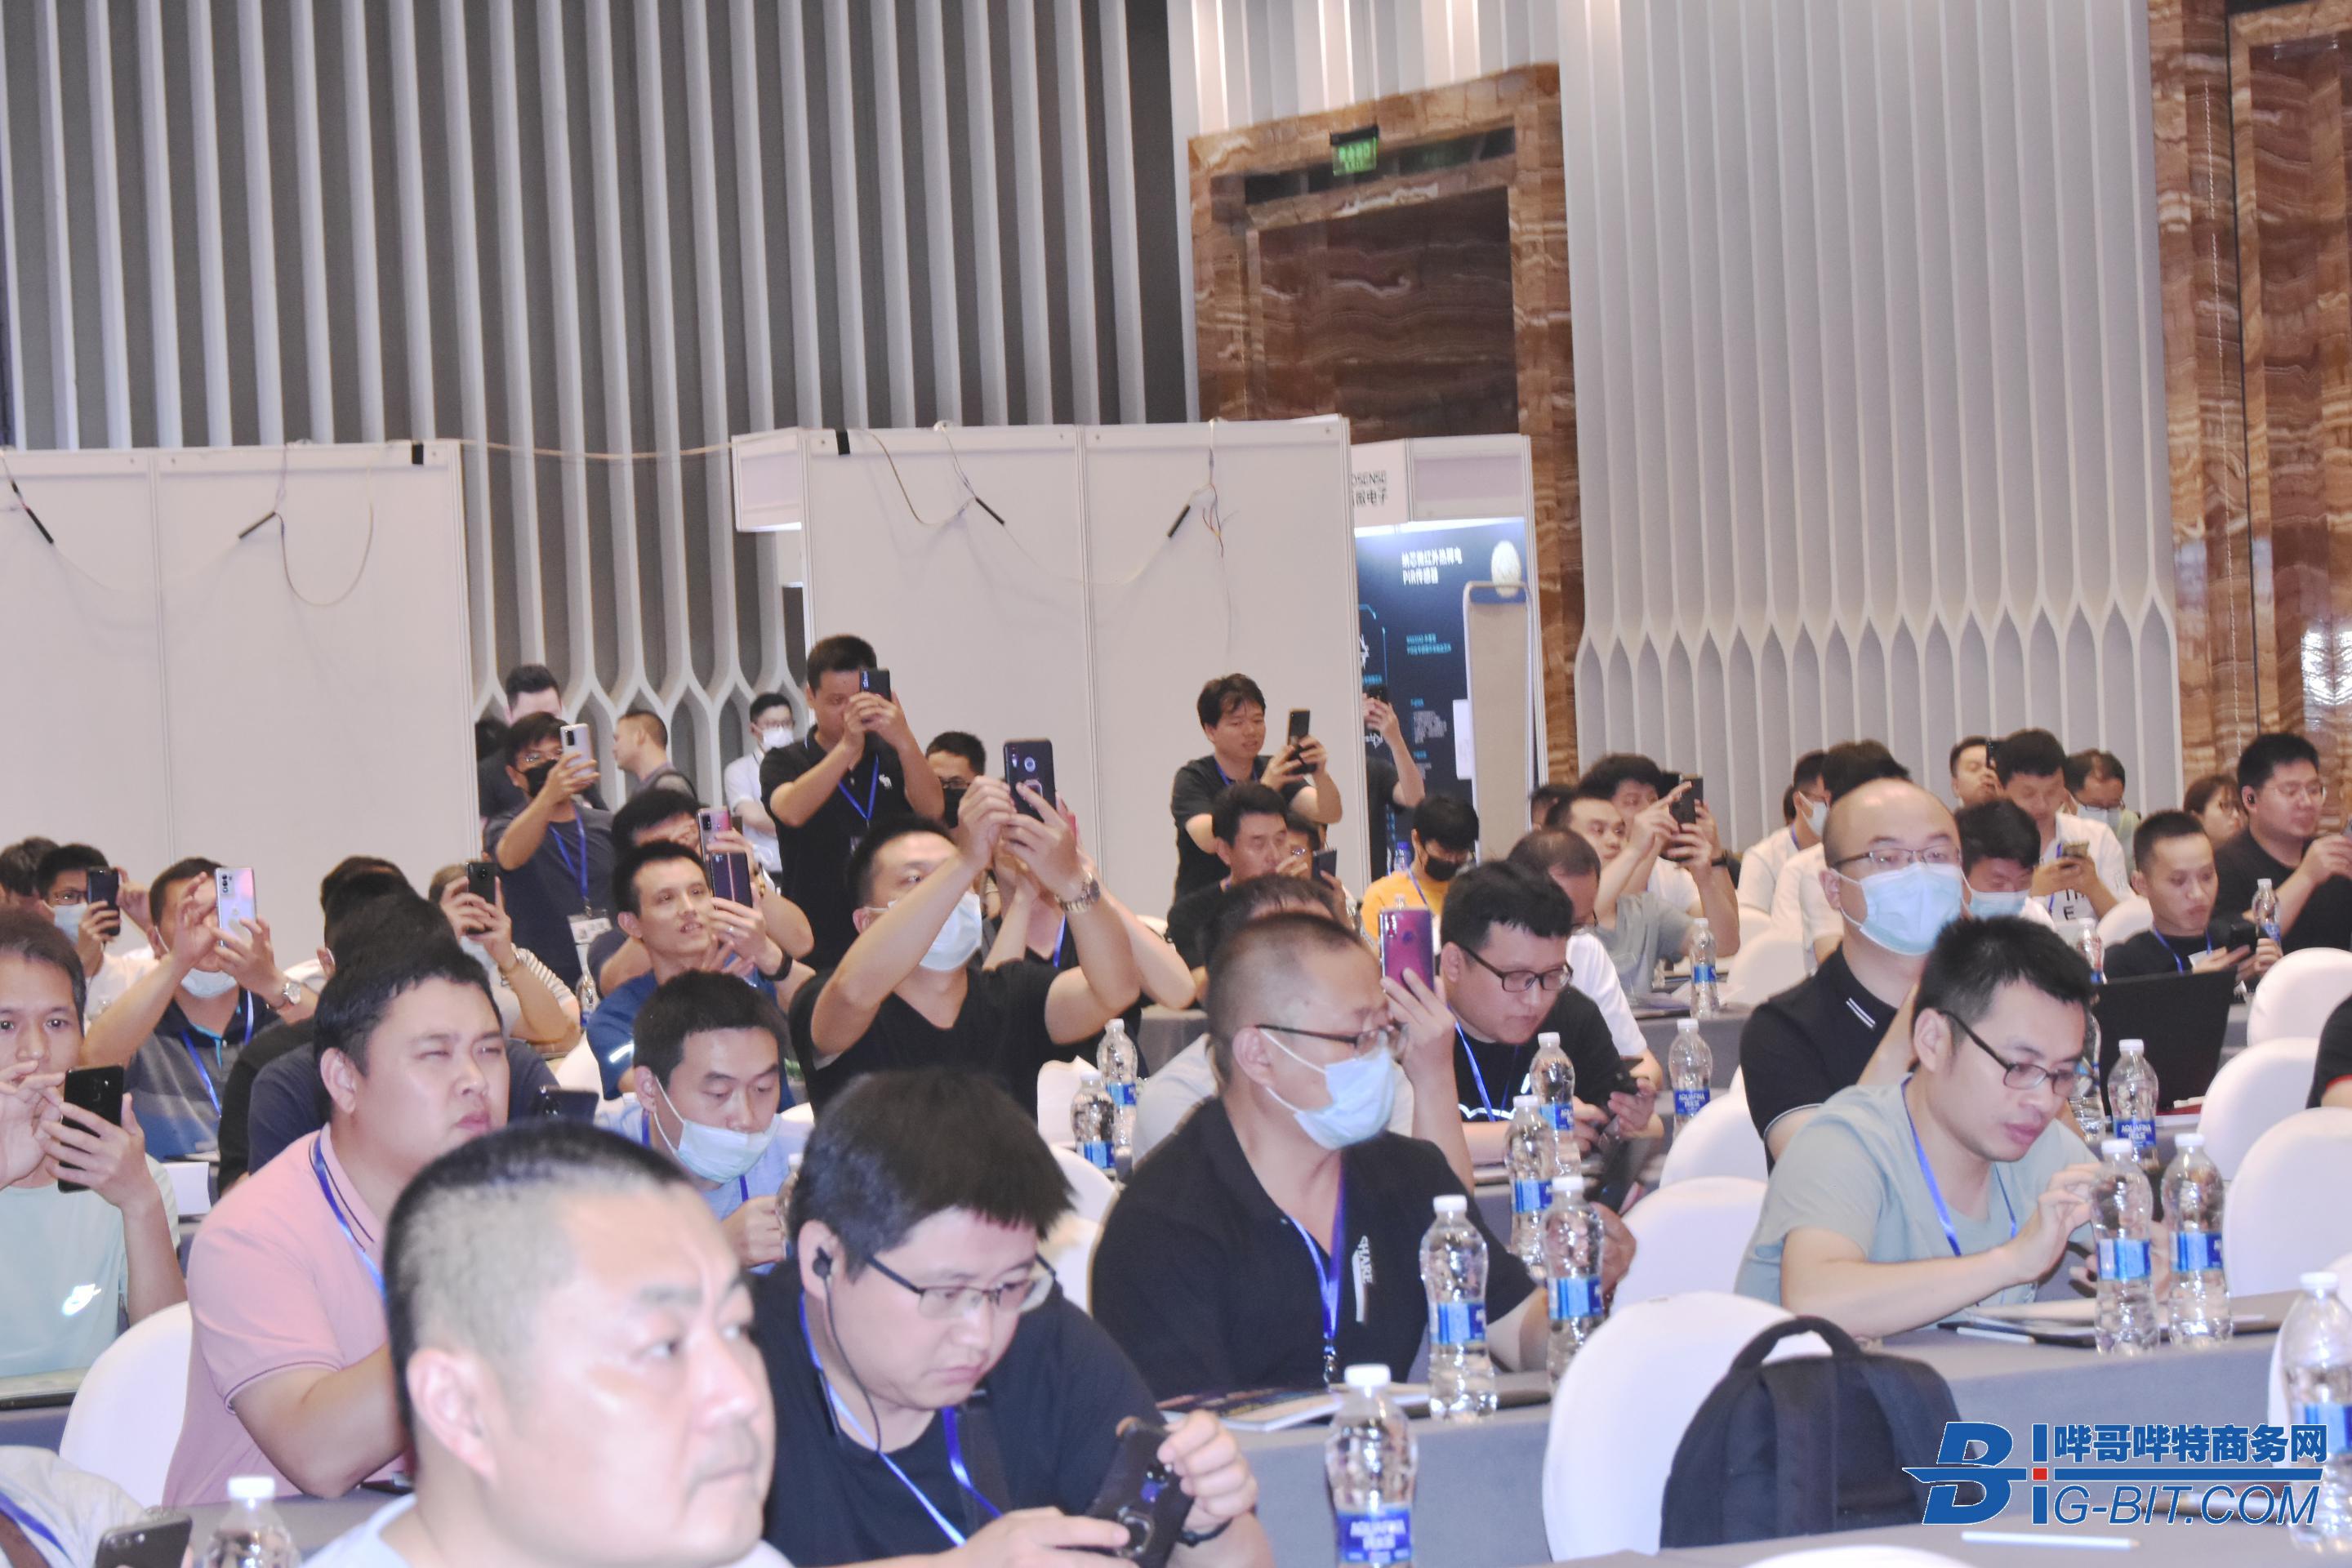 第42届（宁波）AIoT&智能照明与驱动技术研讨会